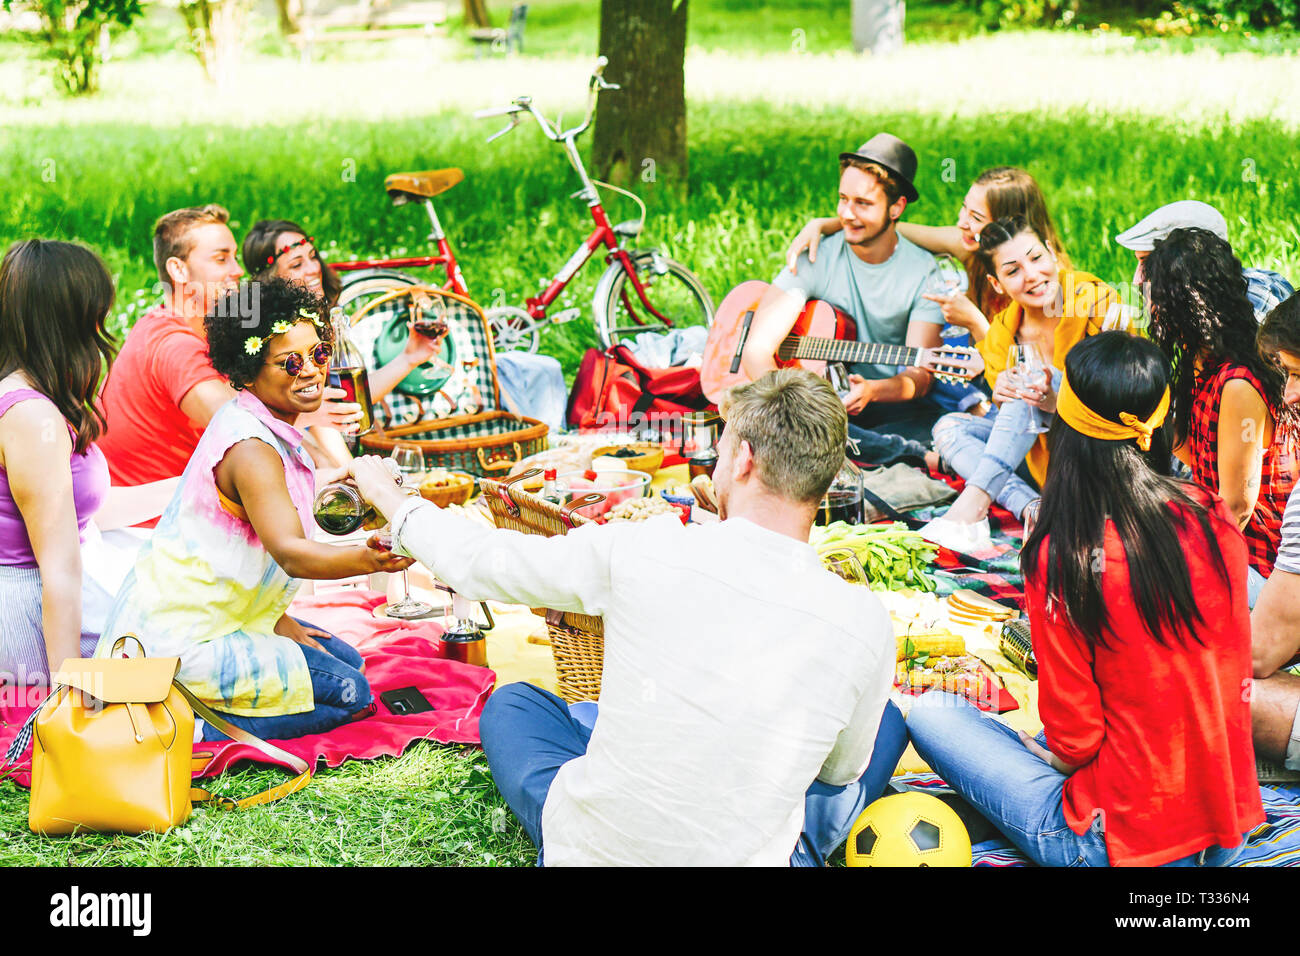 Eine Gruppe von Freunden ein Picknick genießen, beim Essen und Trinken Rotwein sitzen auf Decke in einem Park im Freien - junge Menschen, die eine lustige Begegnung Stockfoto